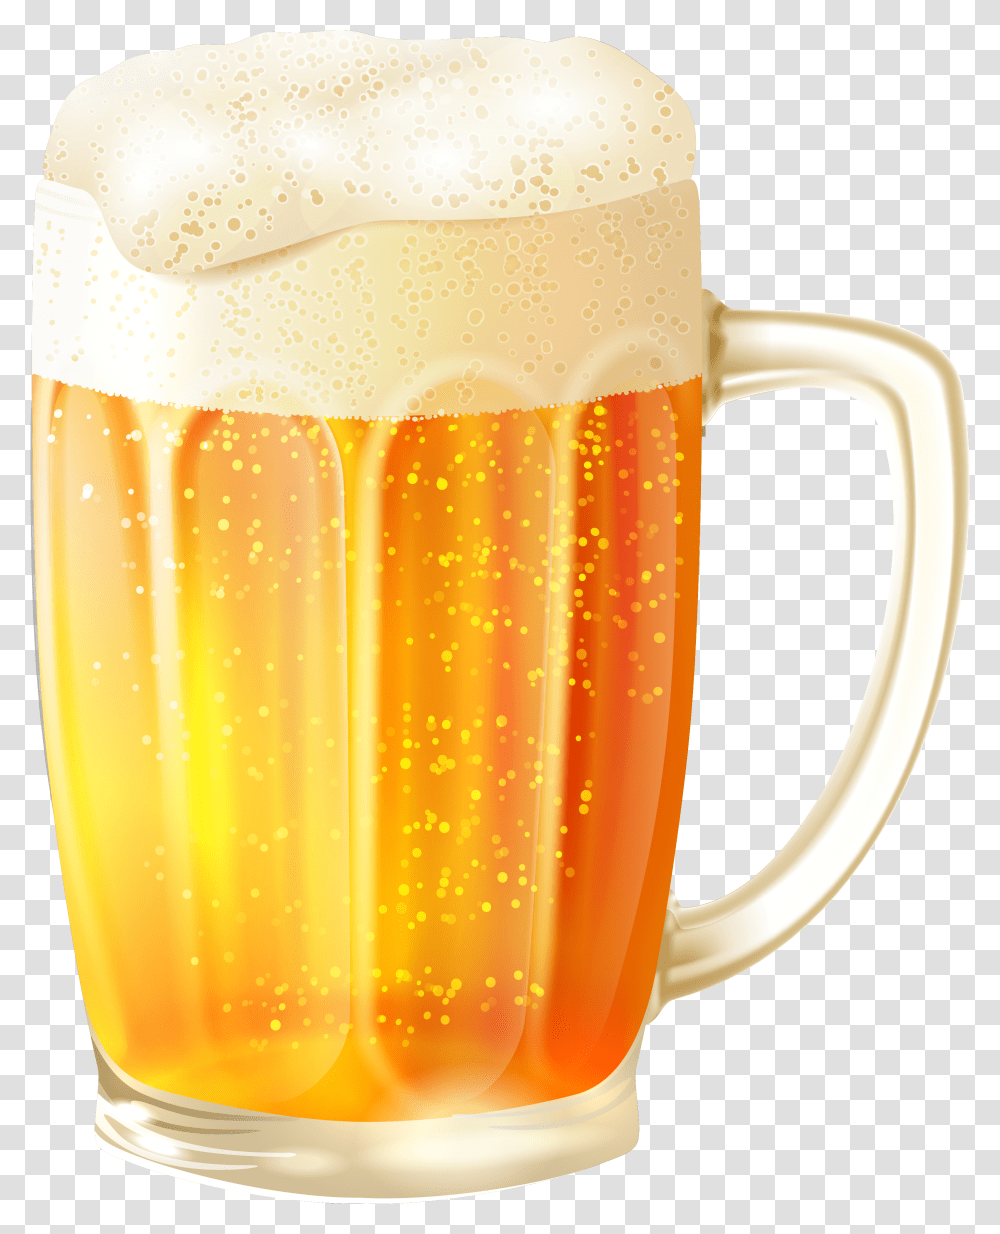 Beer Mug Banner Freeuse Cup Of Beer, Glass, Beer Glass, Alcohol, Beverage Transparent Png